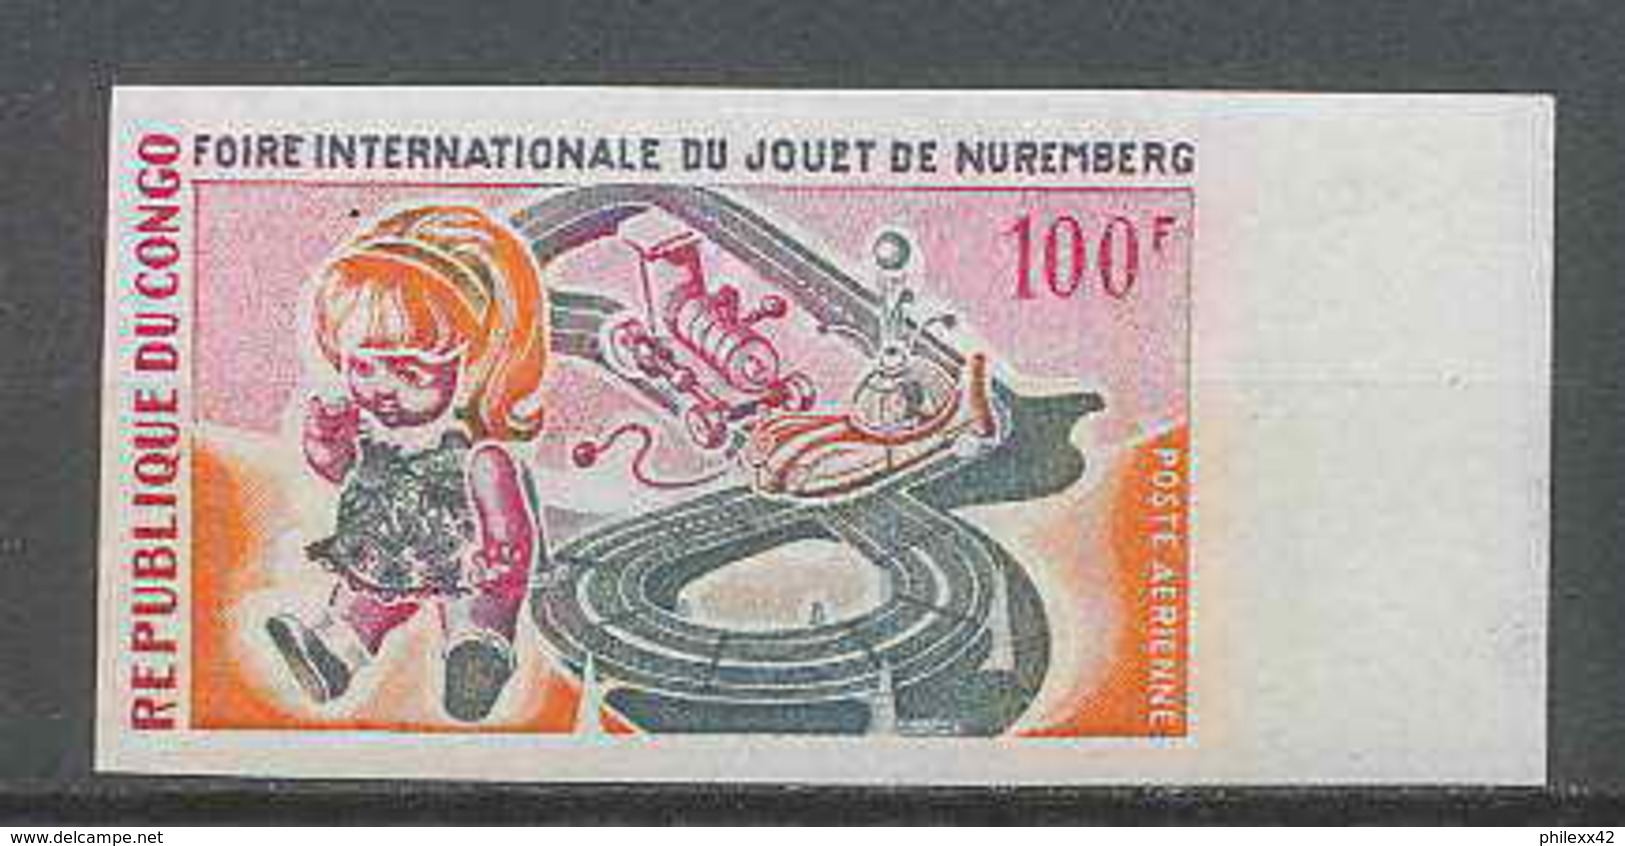 Congo 482 N°85 Foire Du Jouet à Nuremberg Non Dentelé Imperforate MNH ** - Nuevas/fijasellos